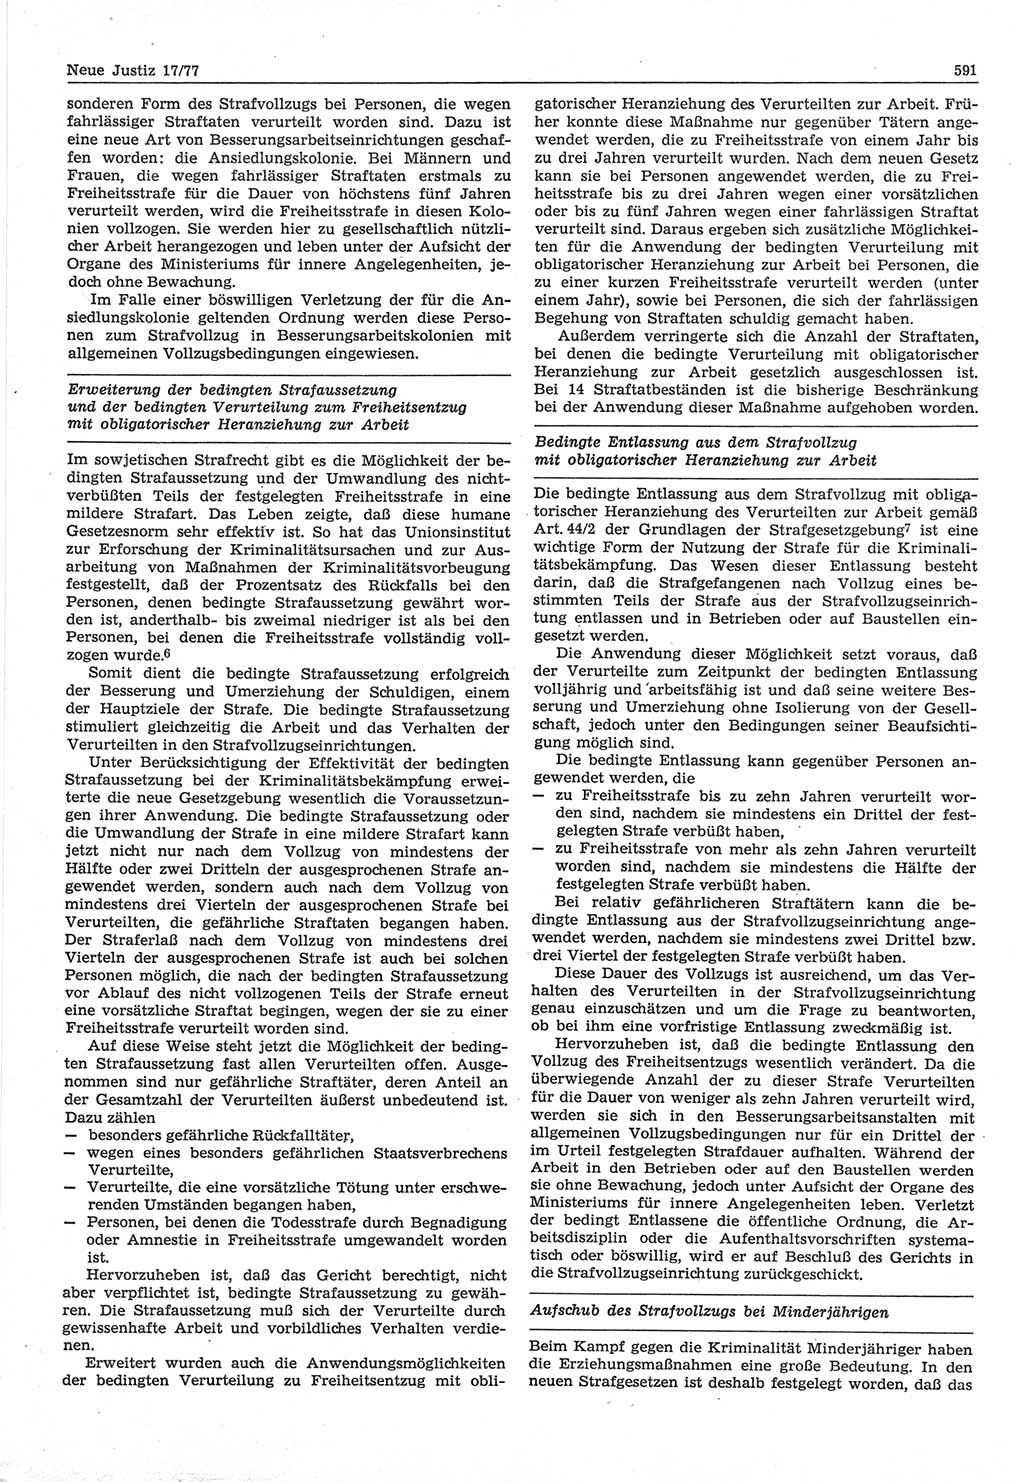 Neue Justiz (NJ), Zeitschrift für Recht und Rechtswissenschaft-Zeitschrift, sozialistisches Recht und Gesetzlichkeit, 31. Jahrgang 1977, Seite 591 (NJ DDR 1977, S. 591)